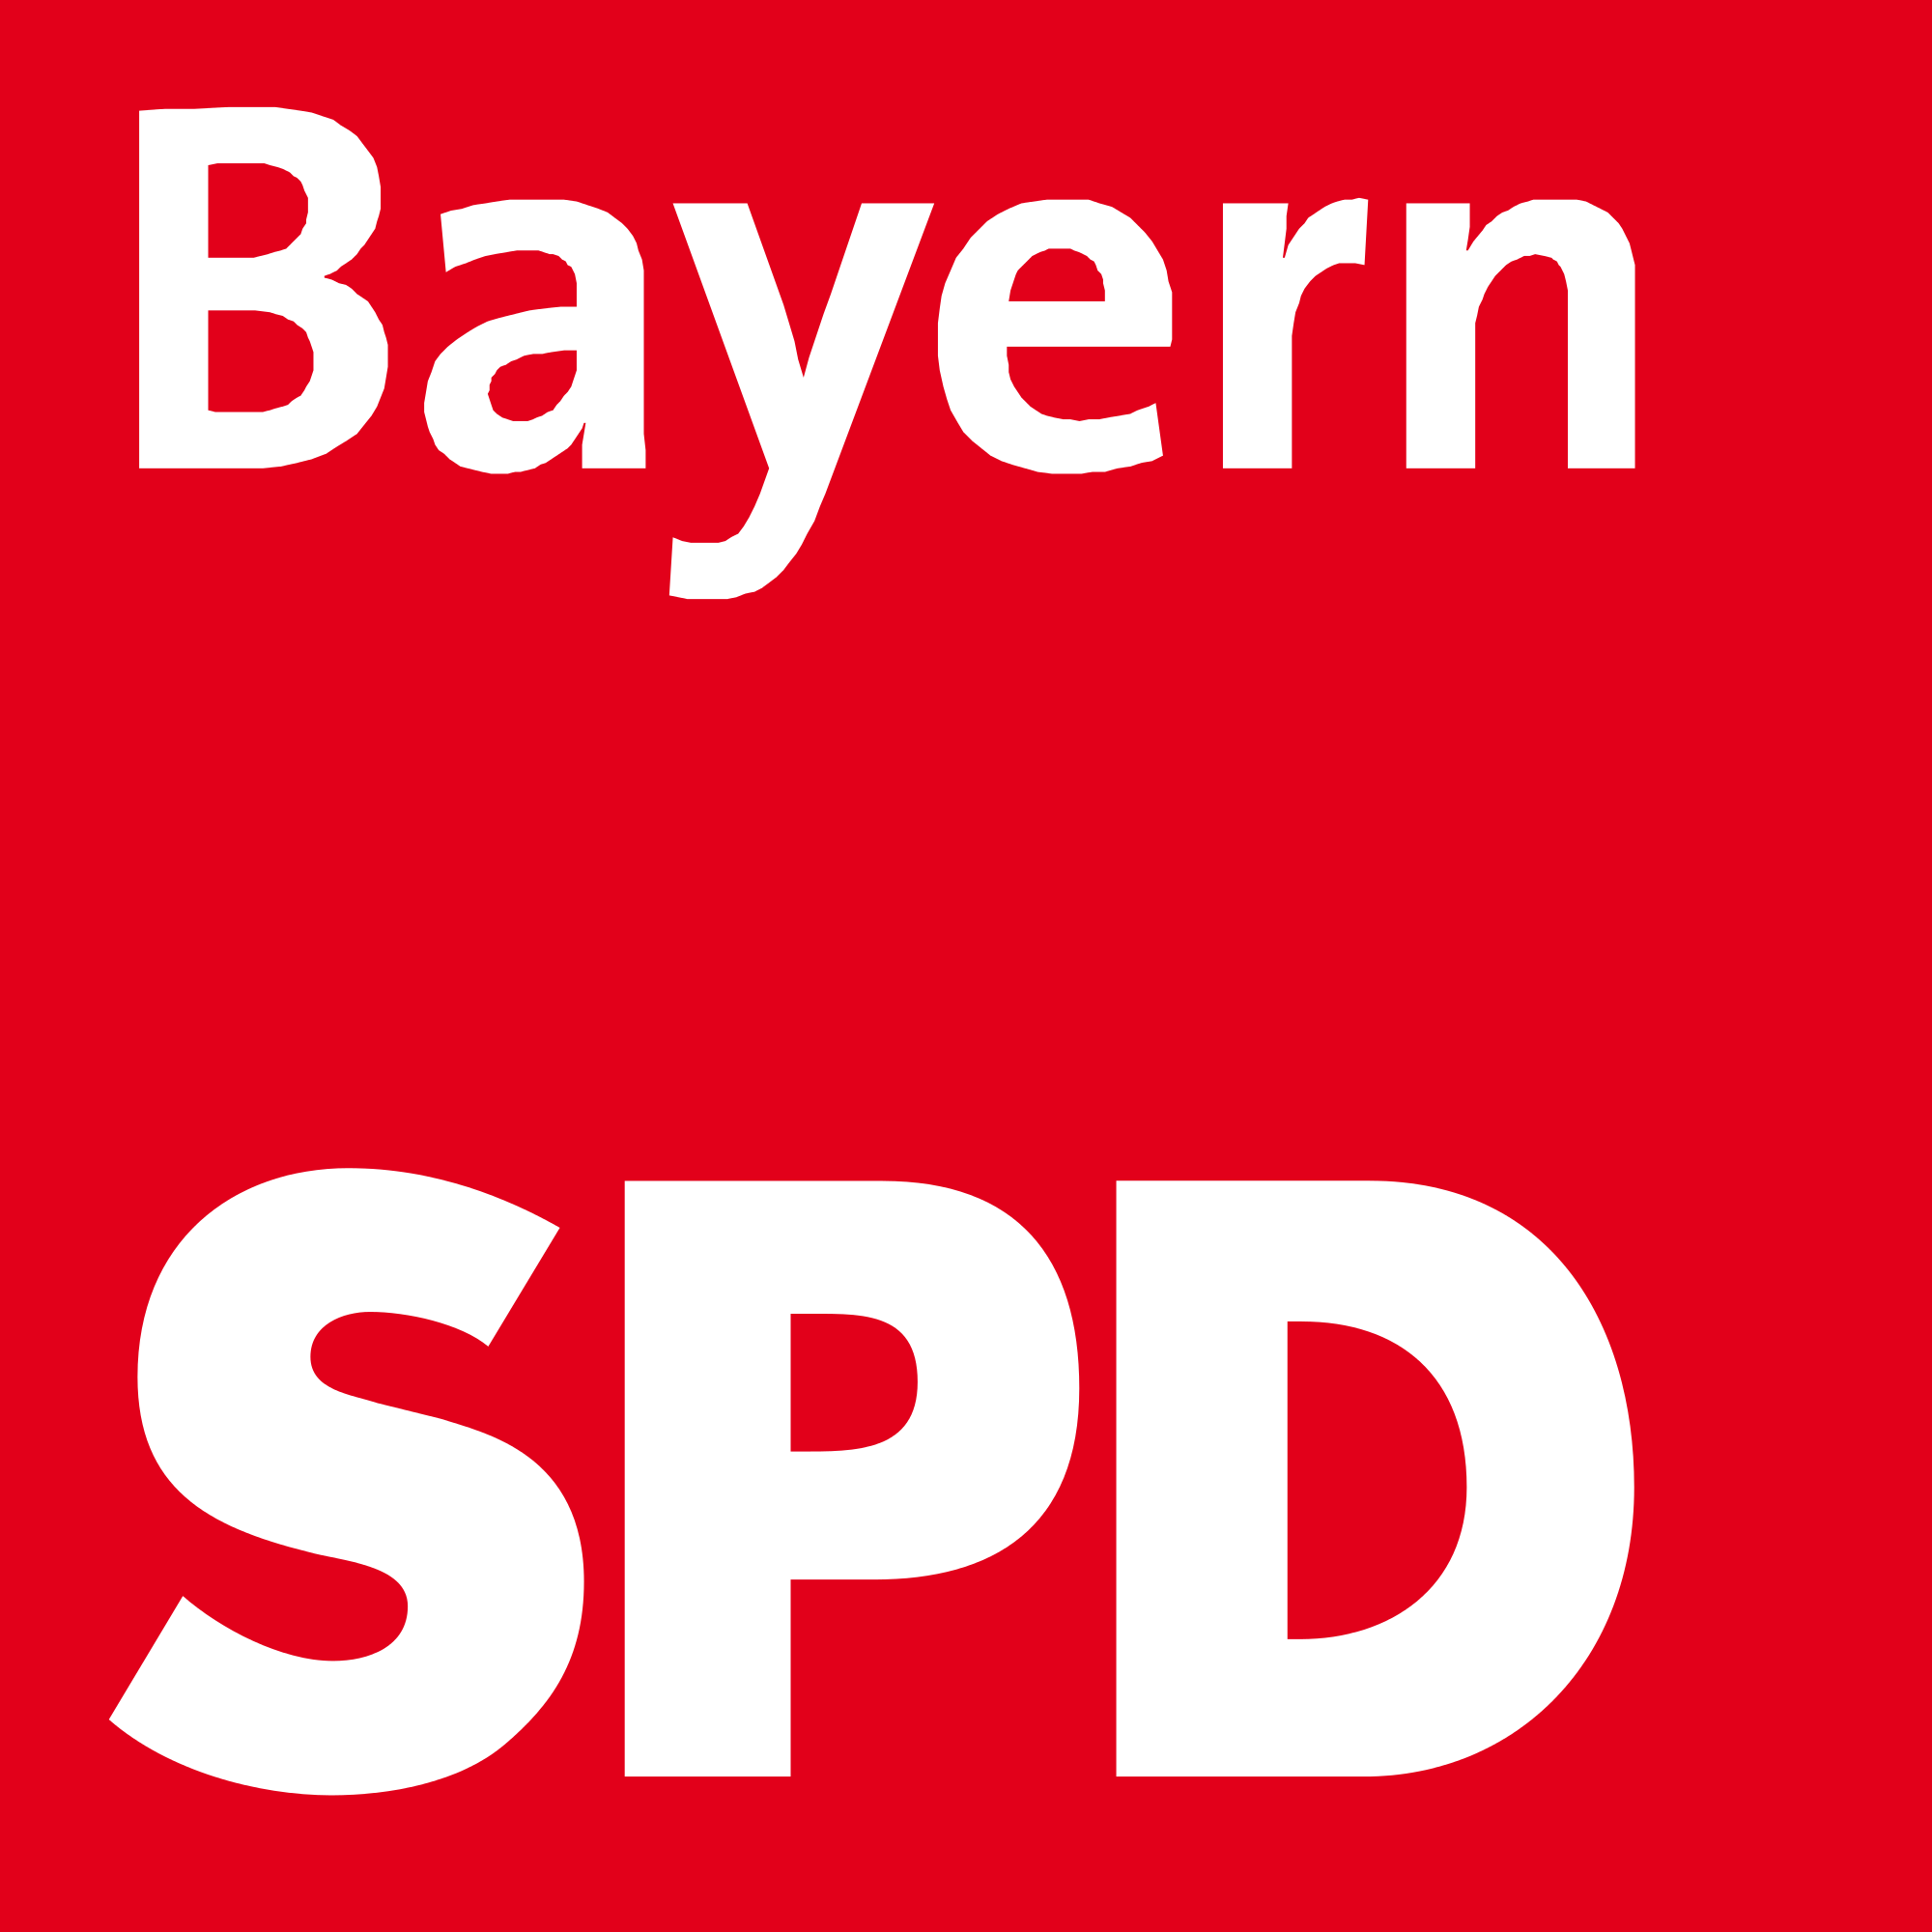 Bayern SPD Logo